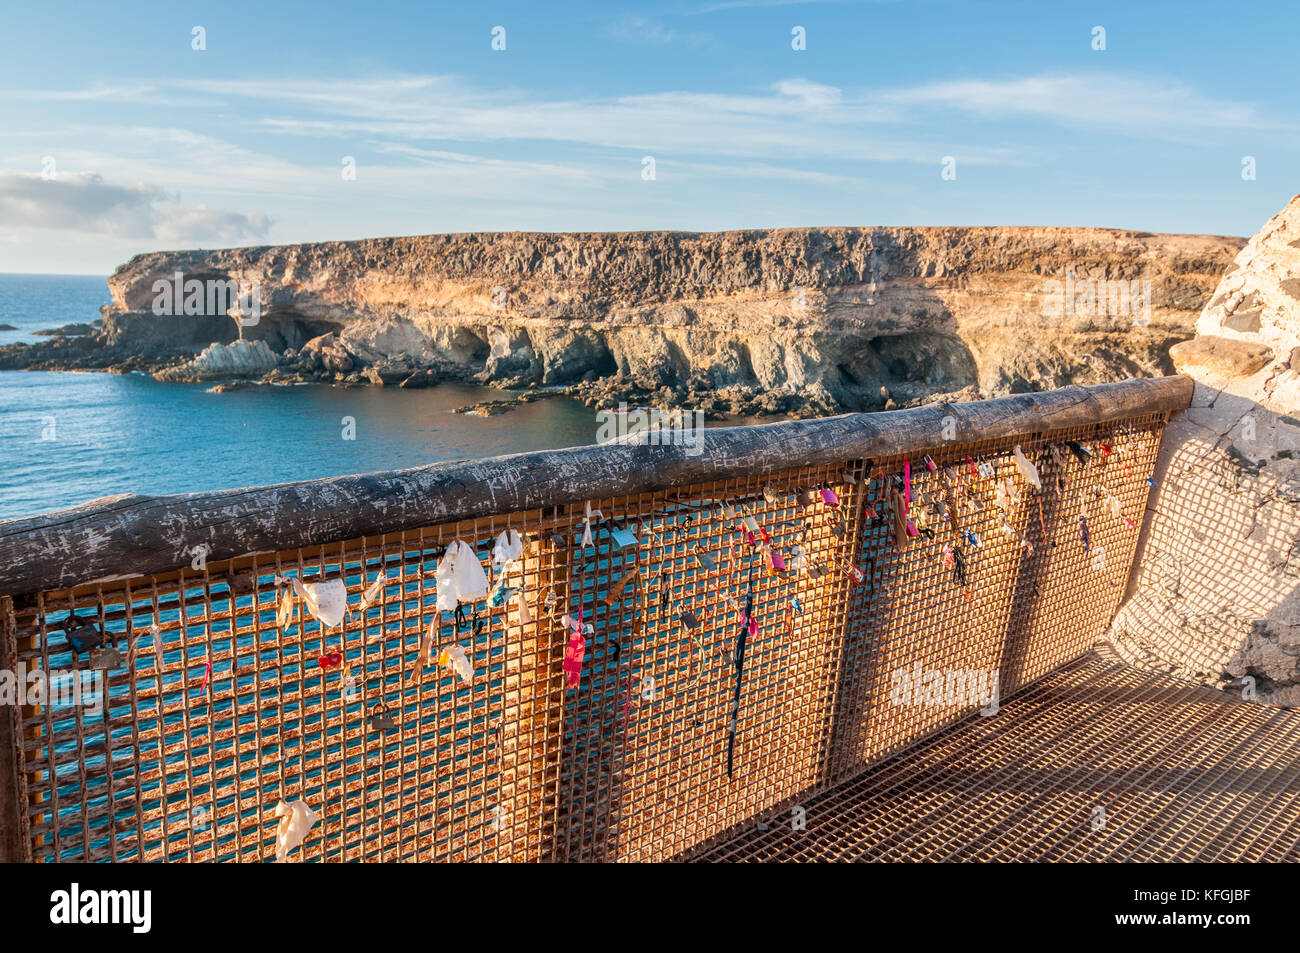 Les grottes de Ajuy vu depuis le sentier de marche et d'une balustrade pleine de cadenas, Fuerteventura, Îles Canaries, Espagne Banque D'Images